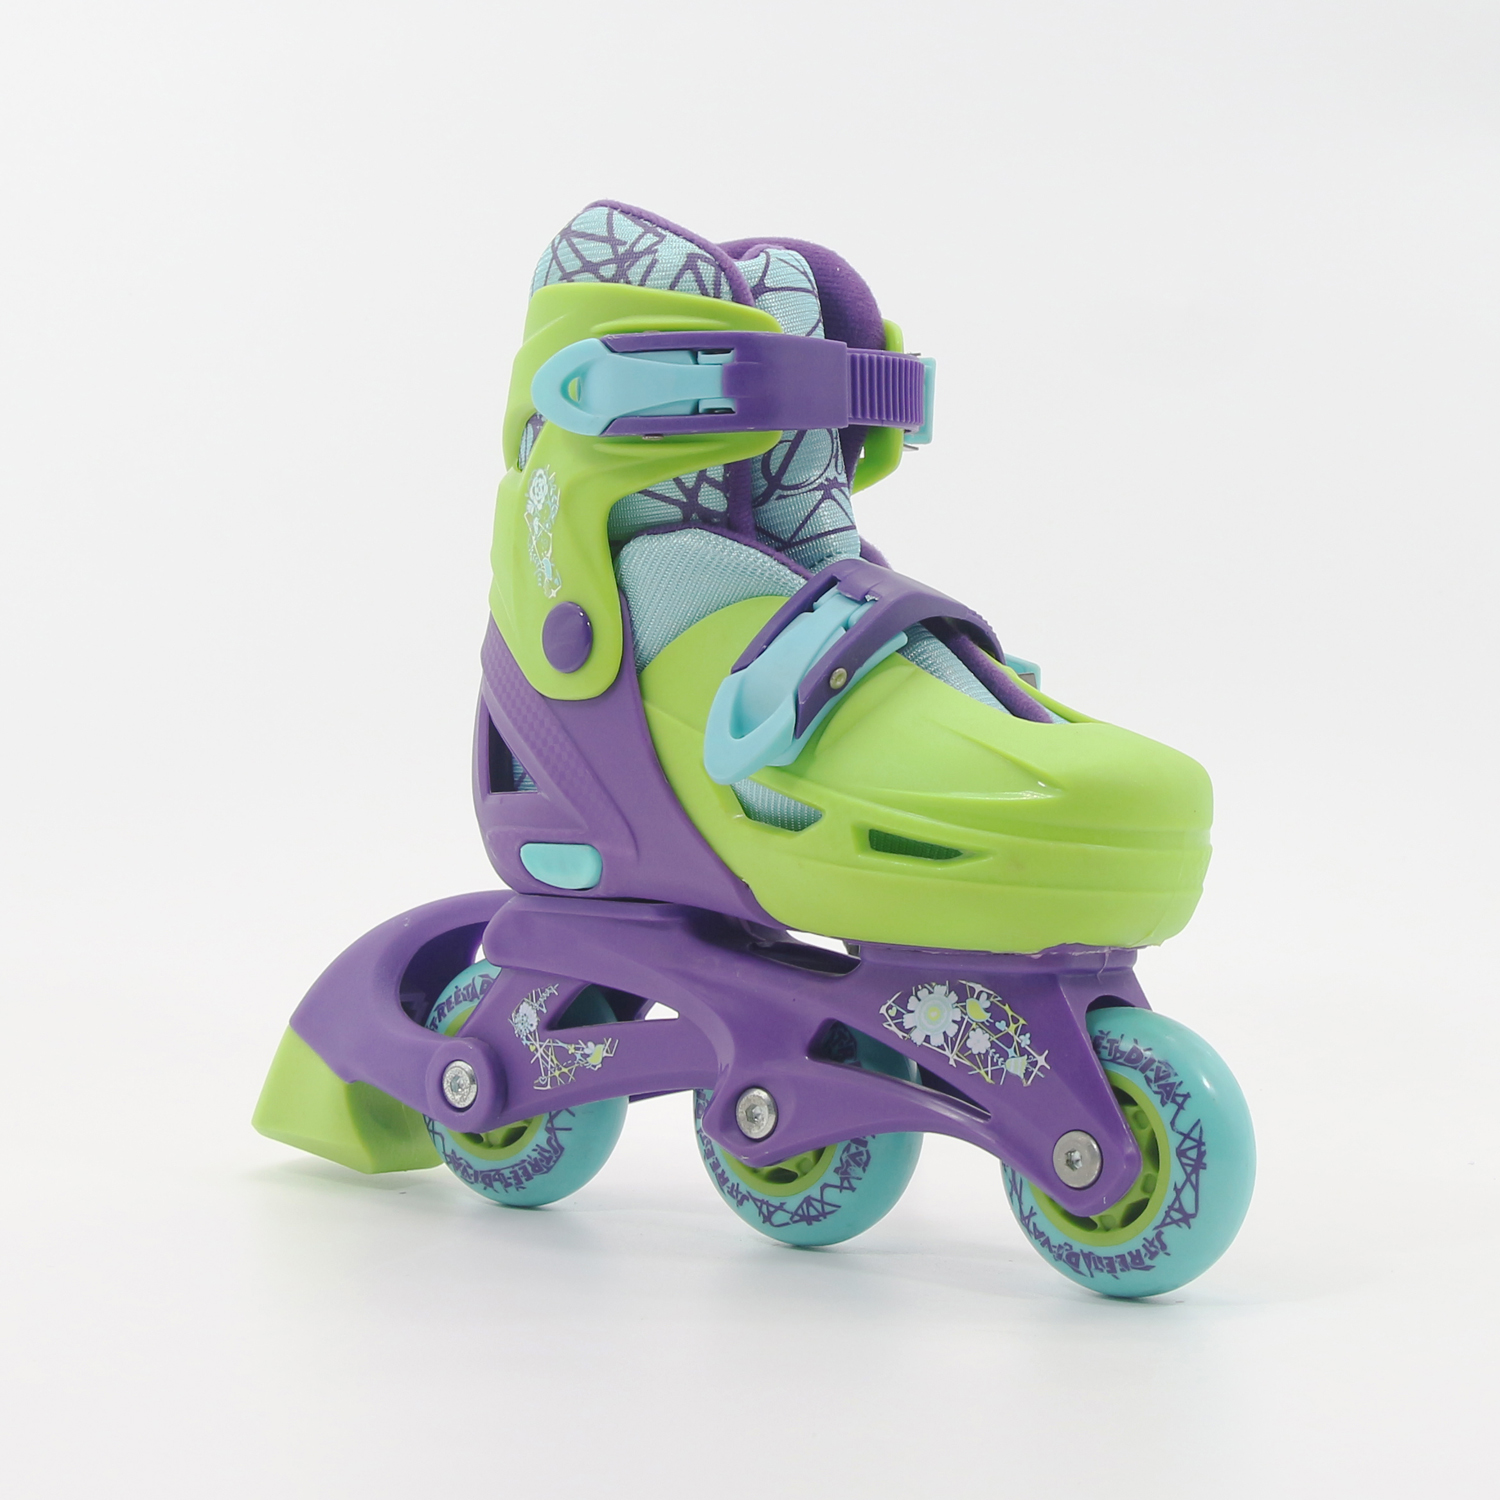 Neue Rollschuhe für kleine Kinder, konvertiert von Tri-Wheel in Inline-Skates